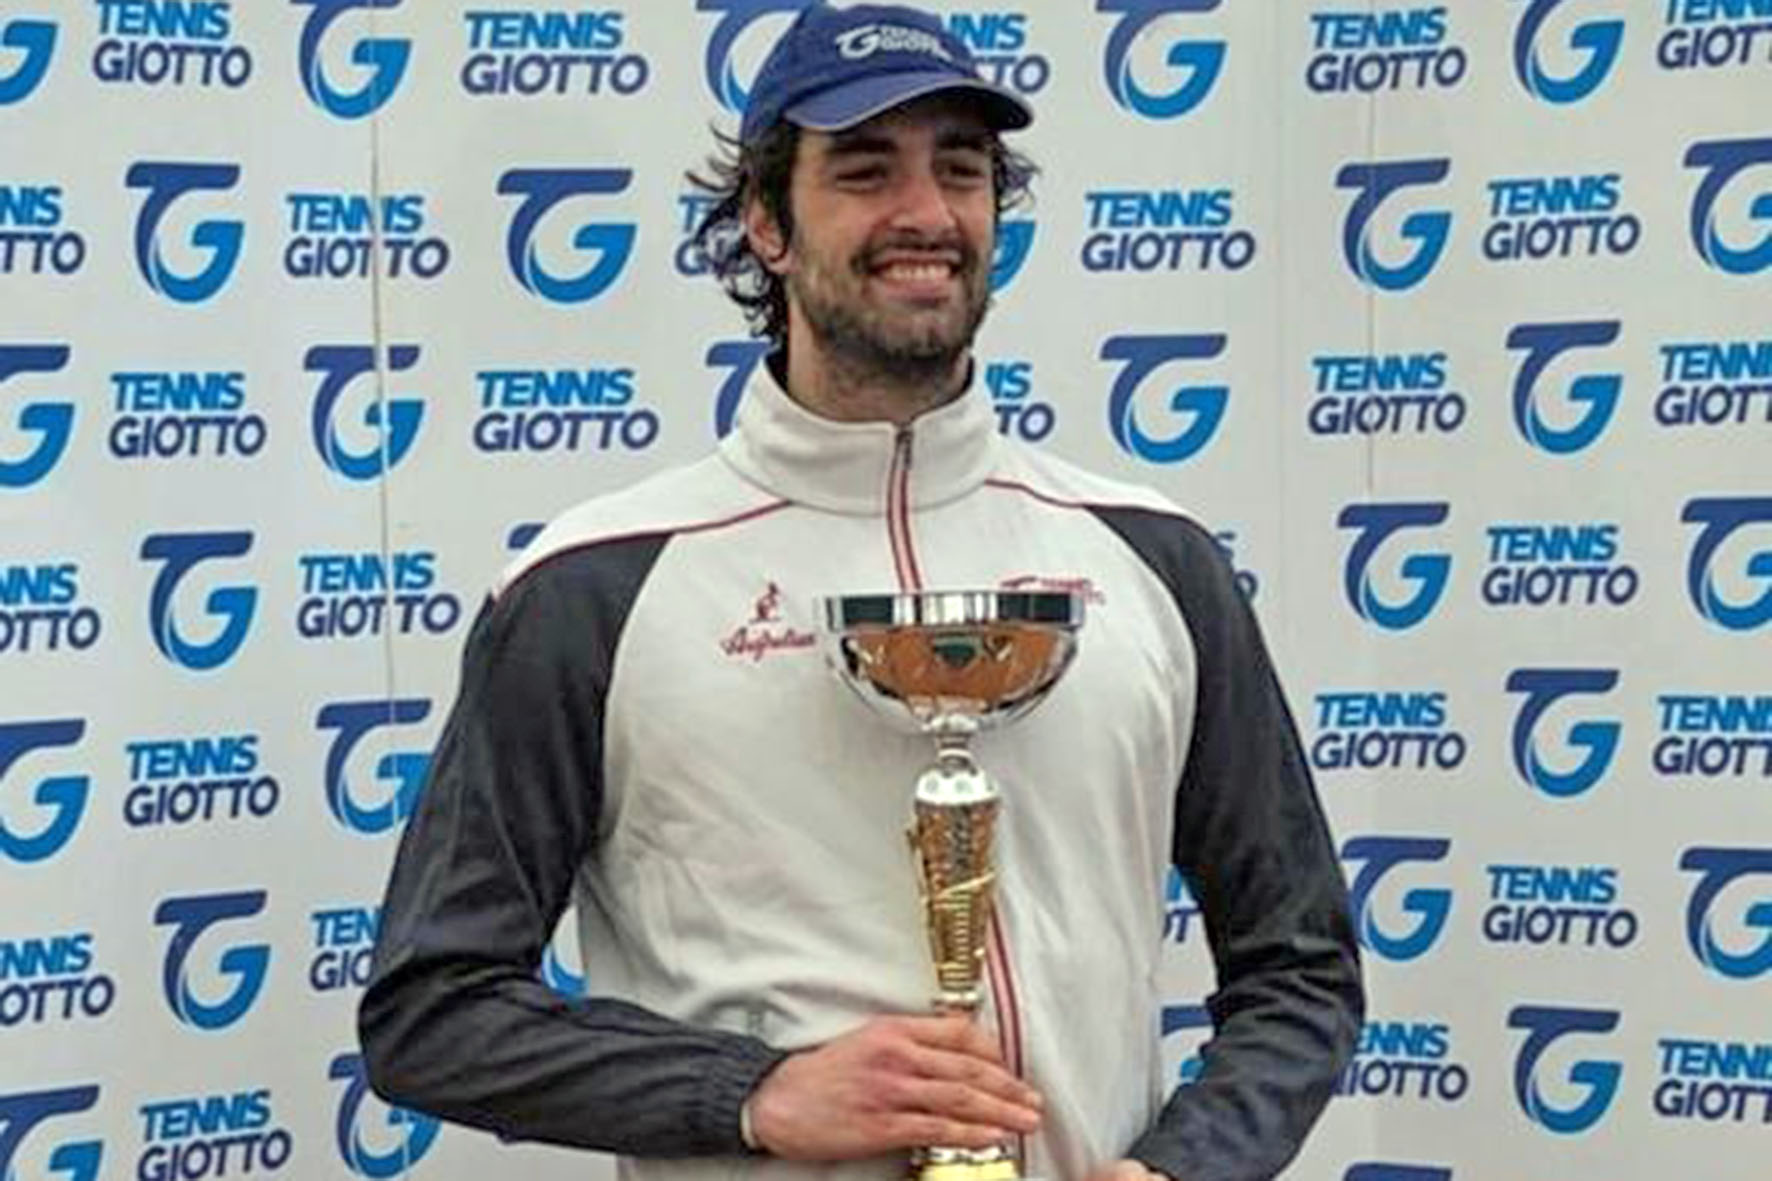 Gioele Valenti del Tennis Giotto è campione provinciale di Quarta Categoria